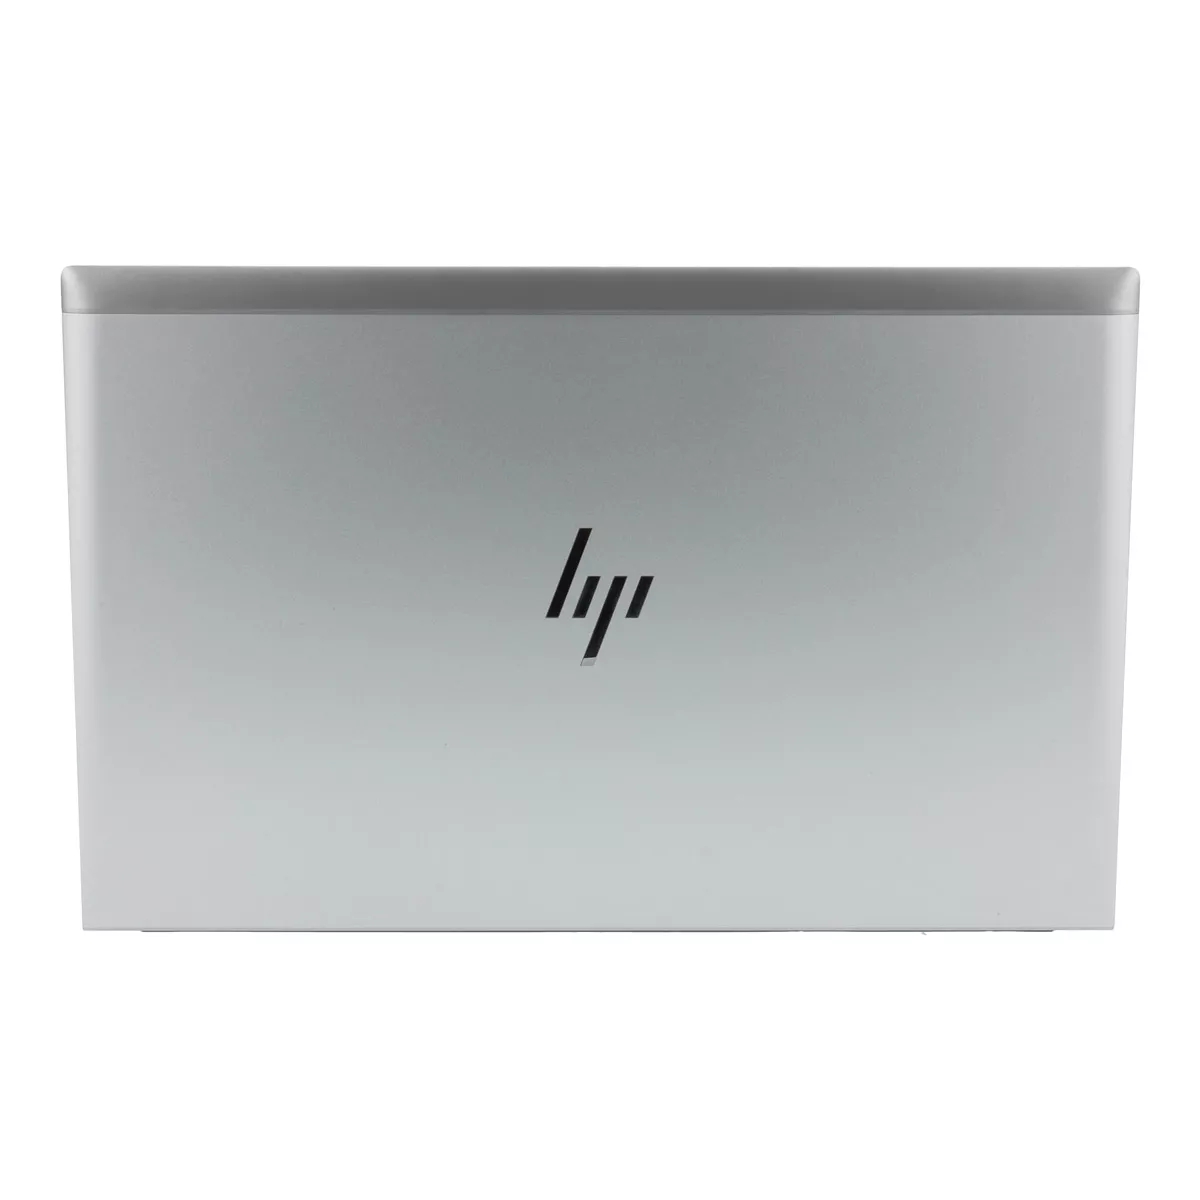 HP EliteBook 850 G8 Core i5 1145G7 16 GB 240 GB M.2 NVMe SSD Webcam A+